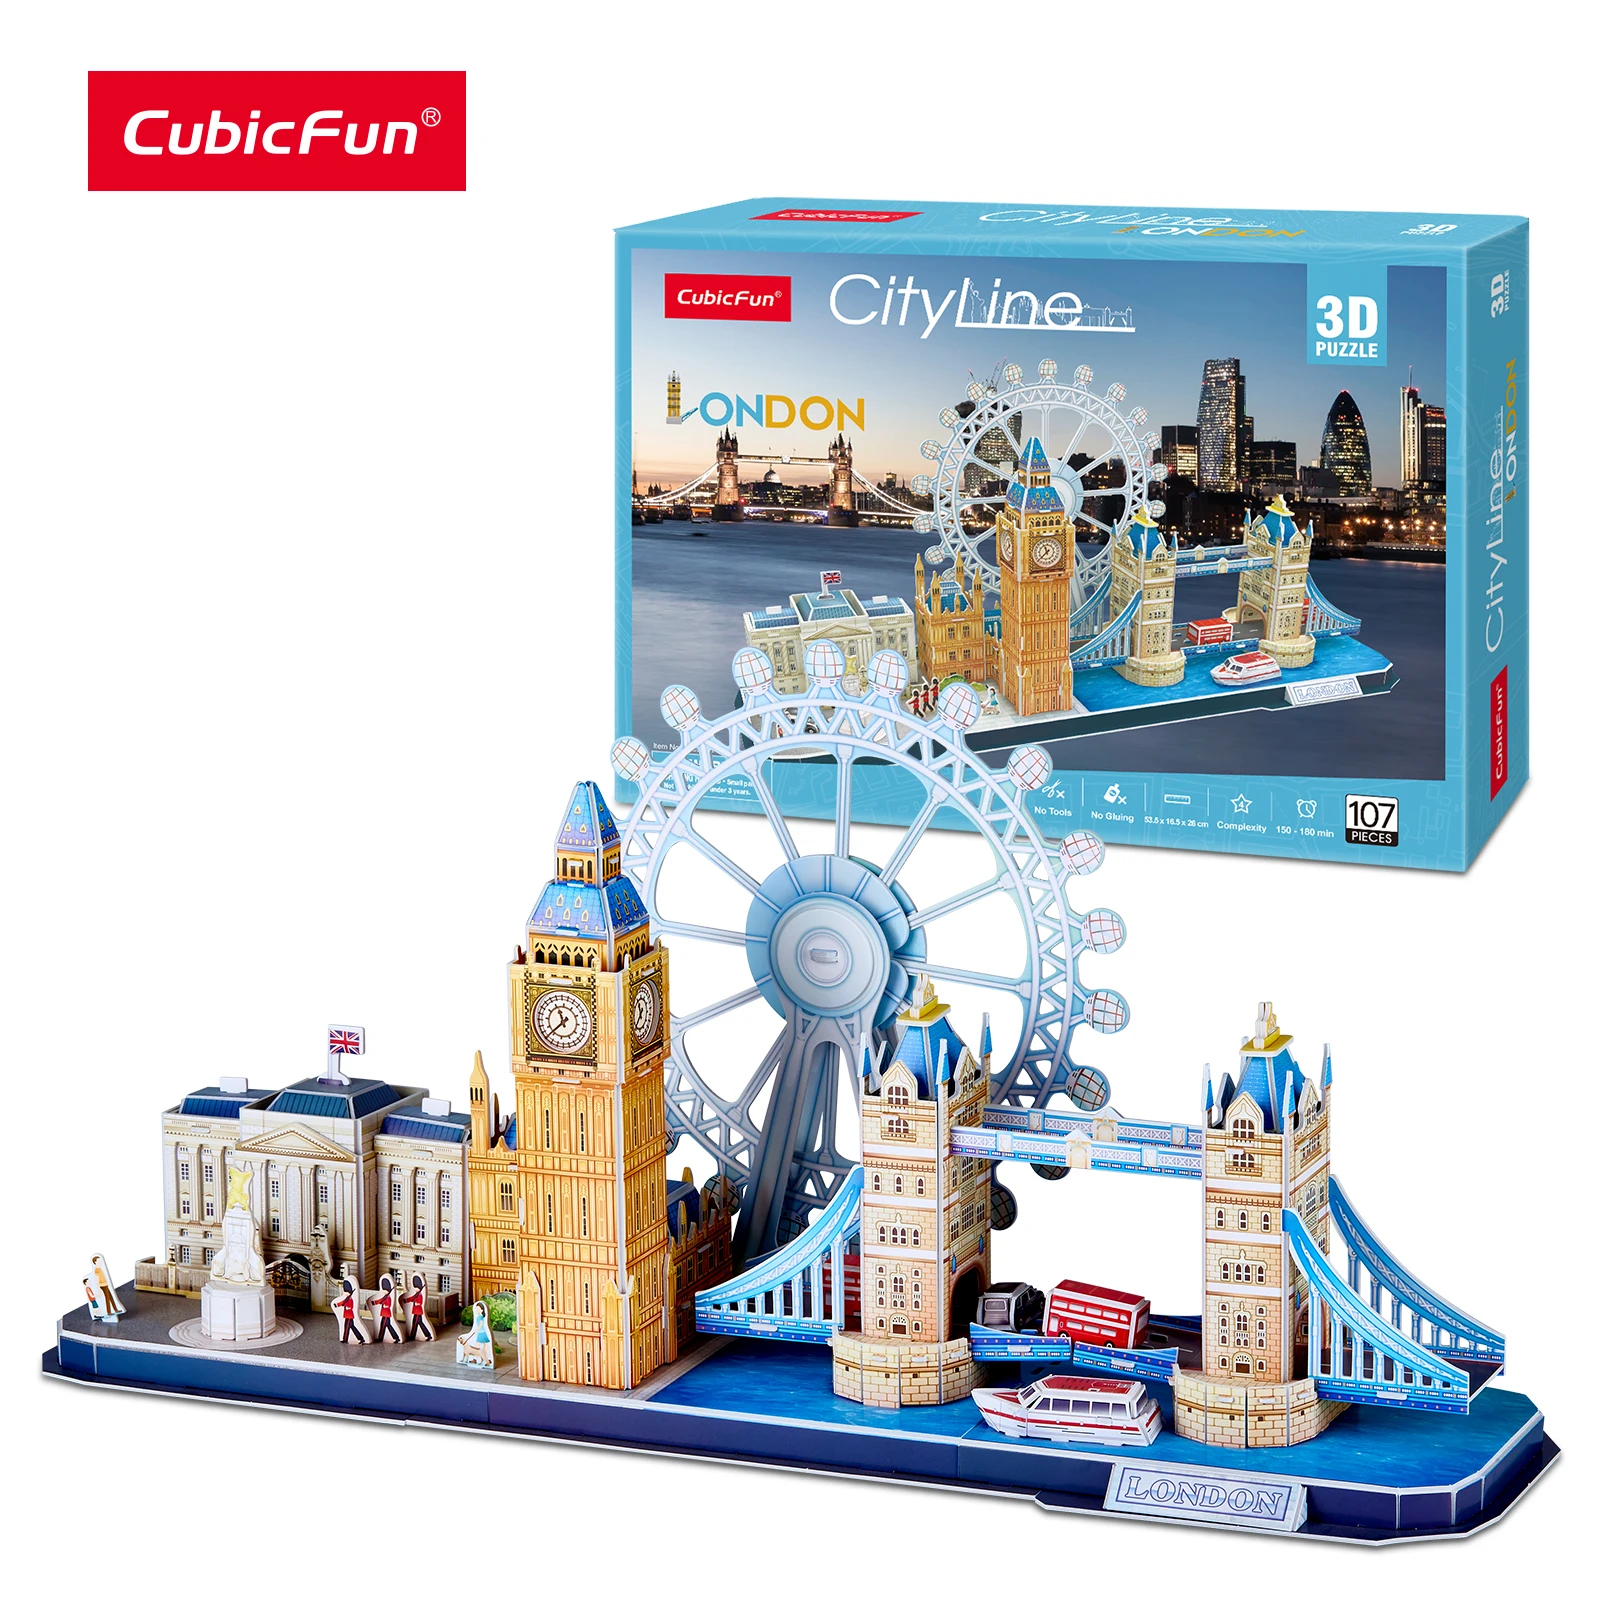 3D Puzzle Cityline London Cubic Fun Tower Bridge Big Ben Buckingham City Line 